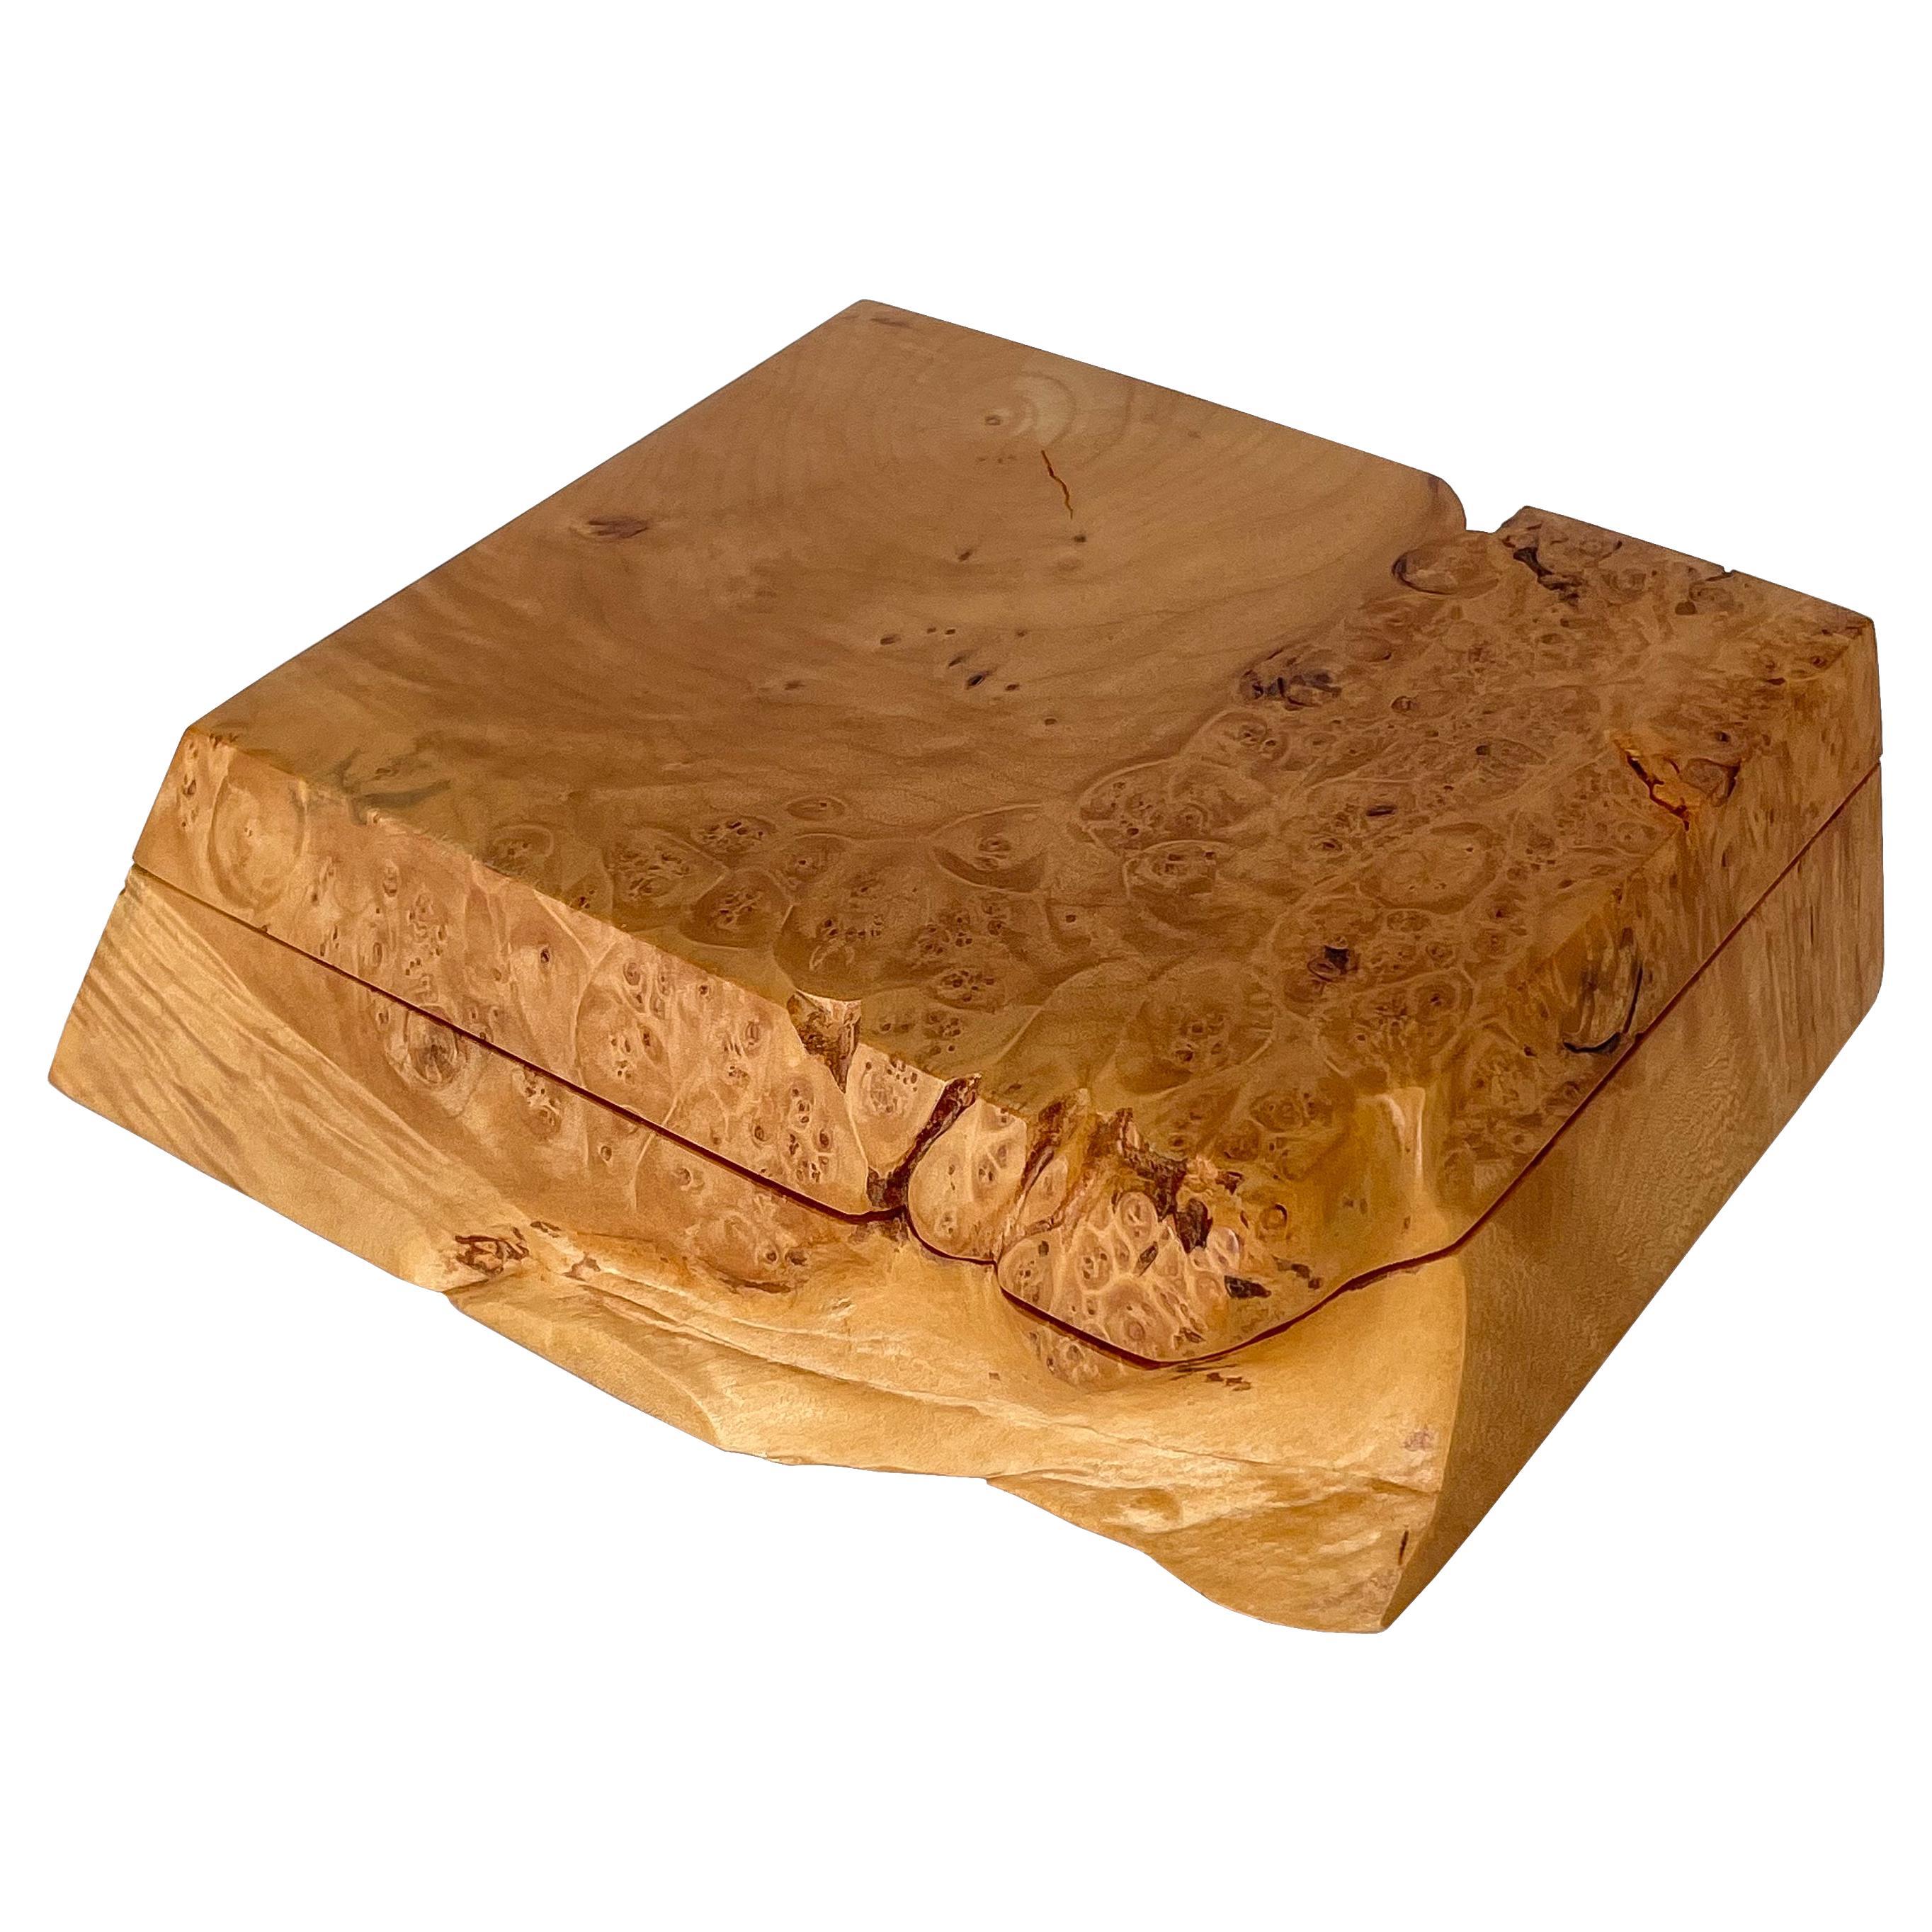 Michael Elkan Studio Craft Carved Burl Wood Box